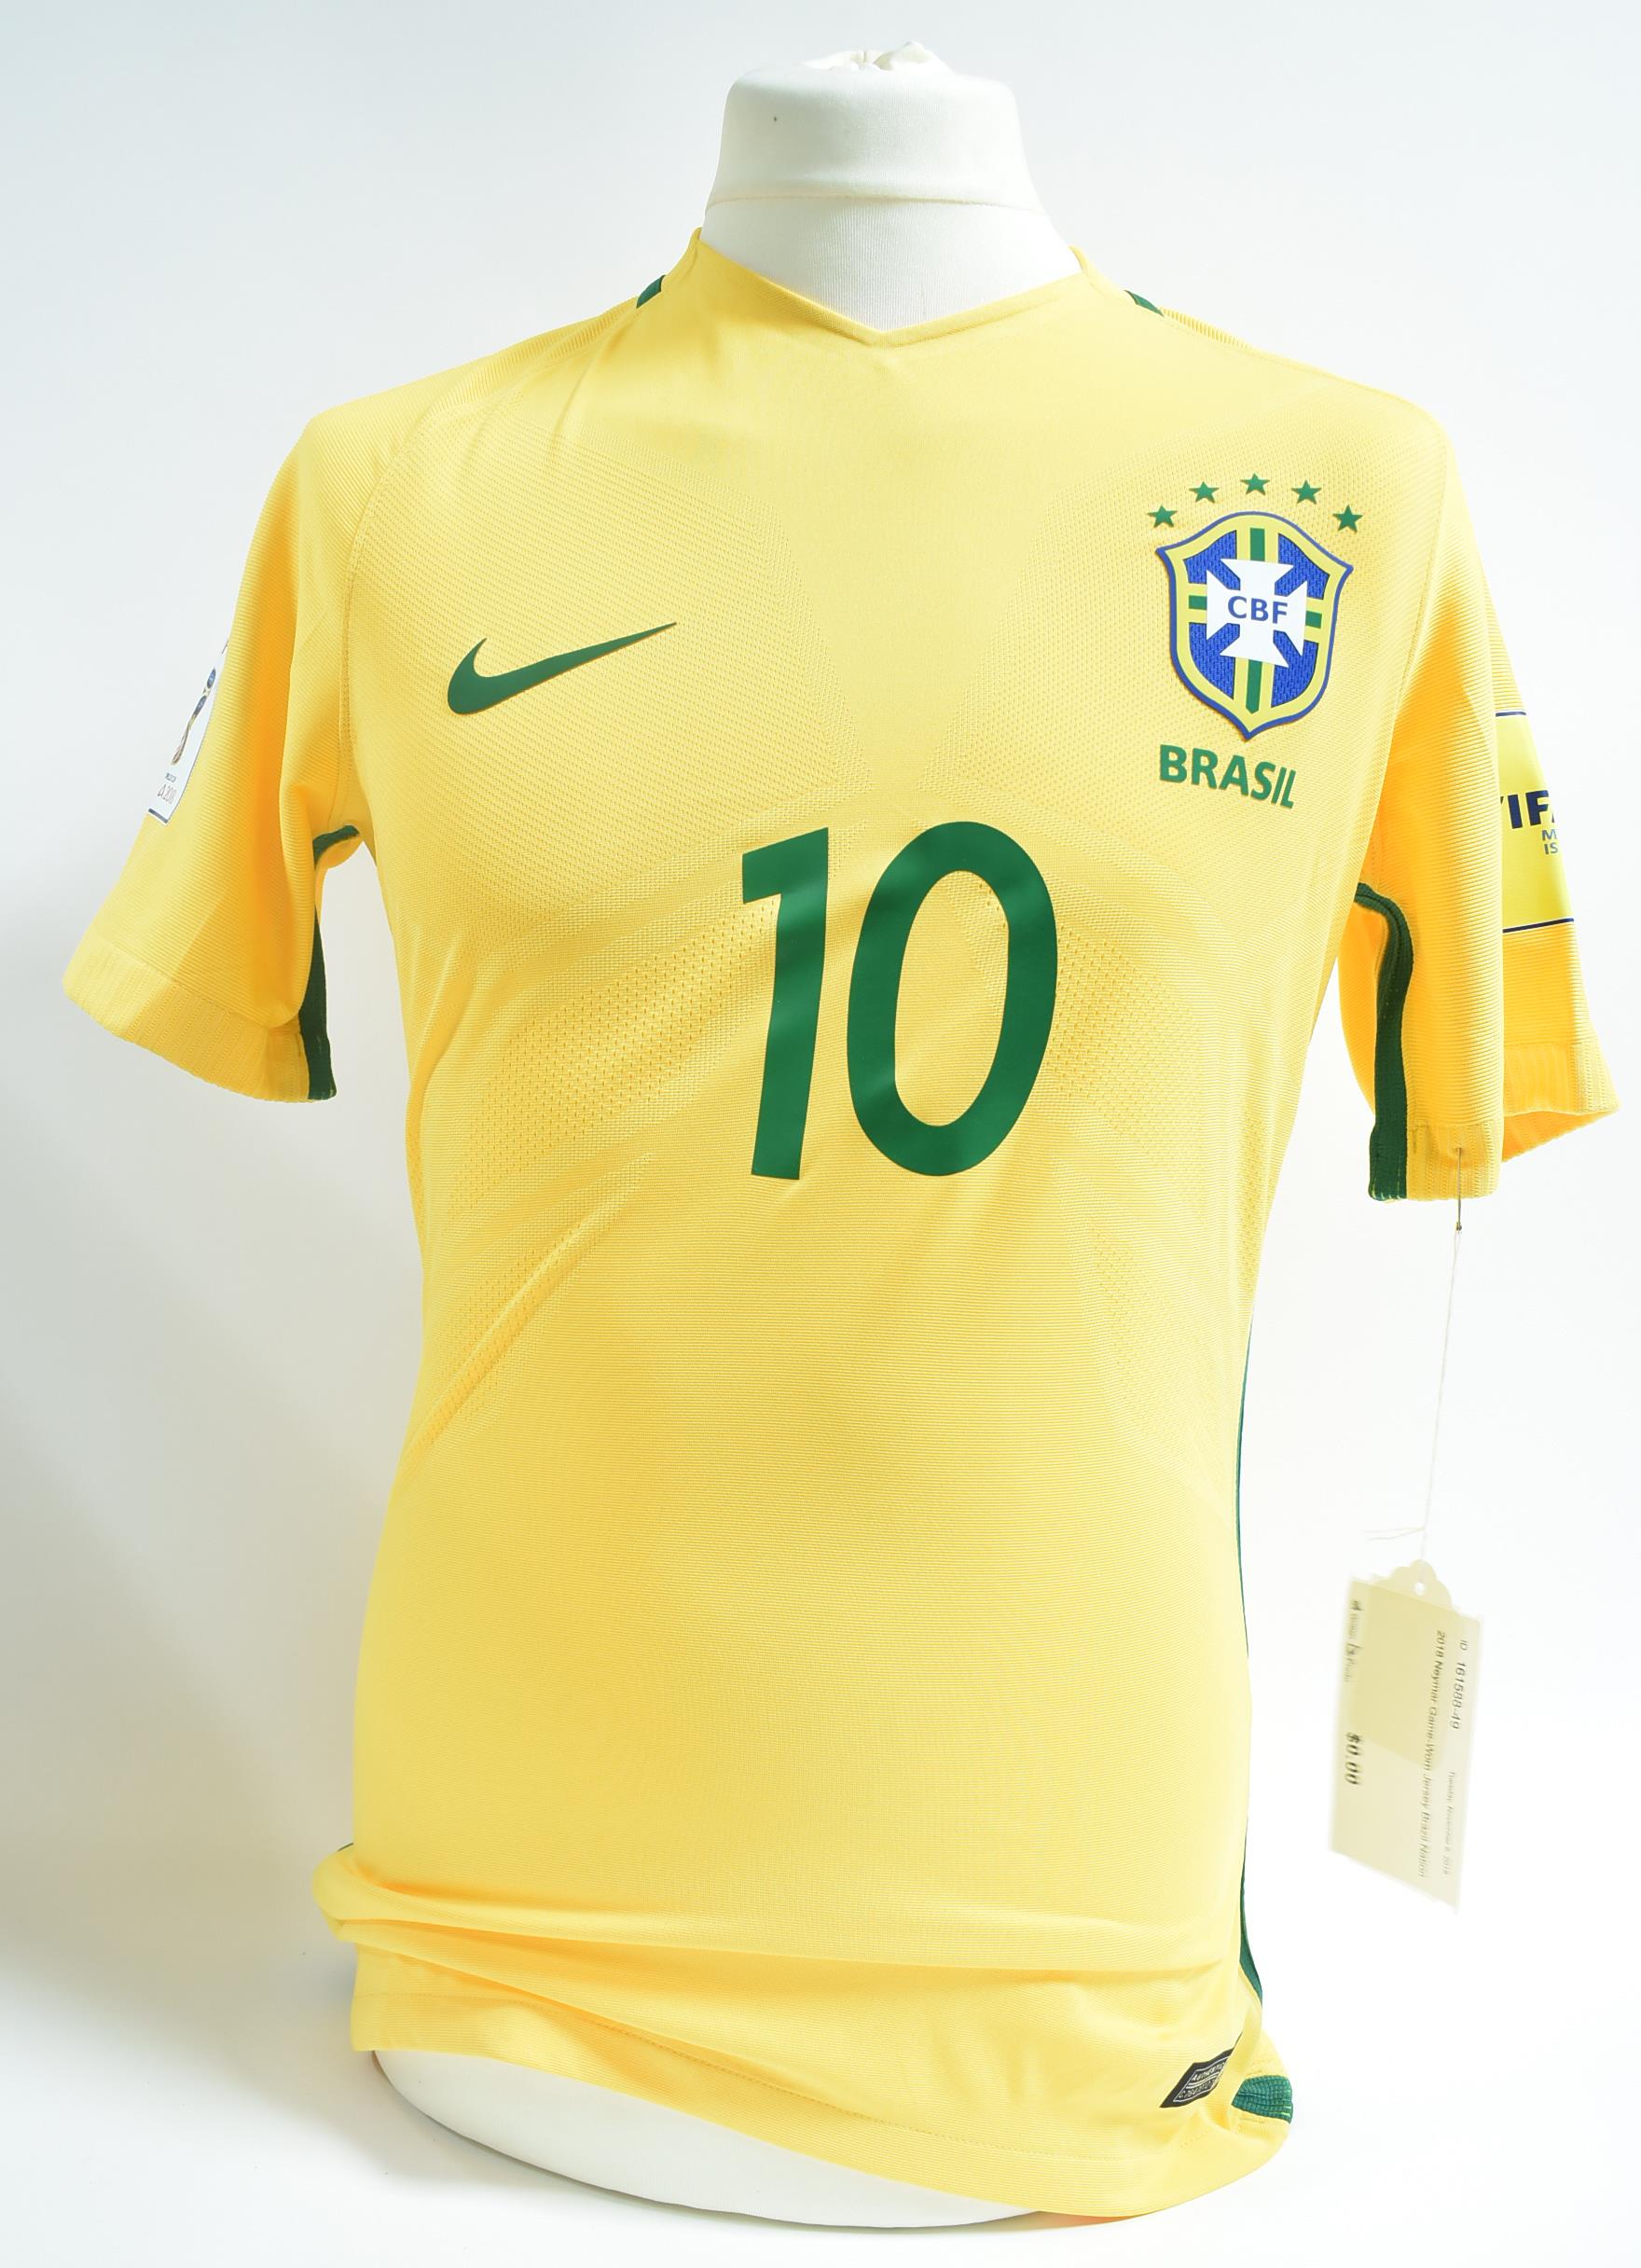 Neymar Jr. collector's Brazil jersey